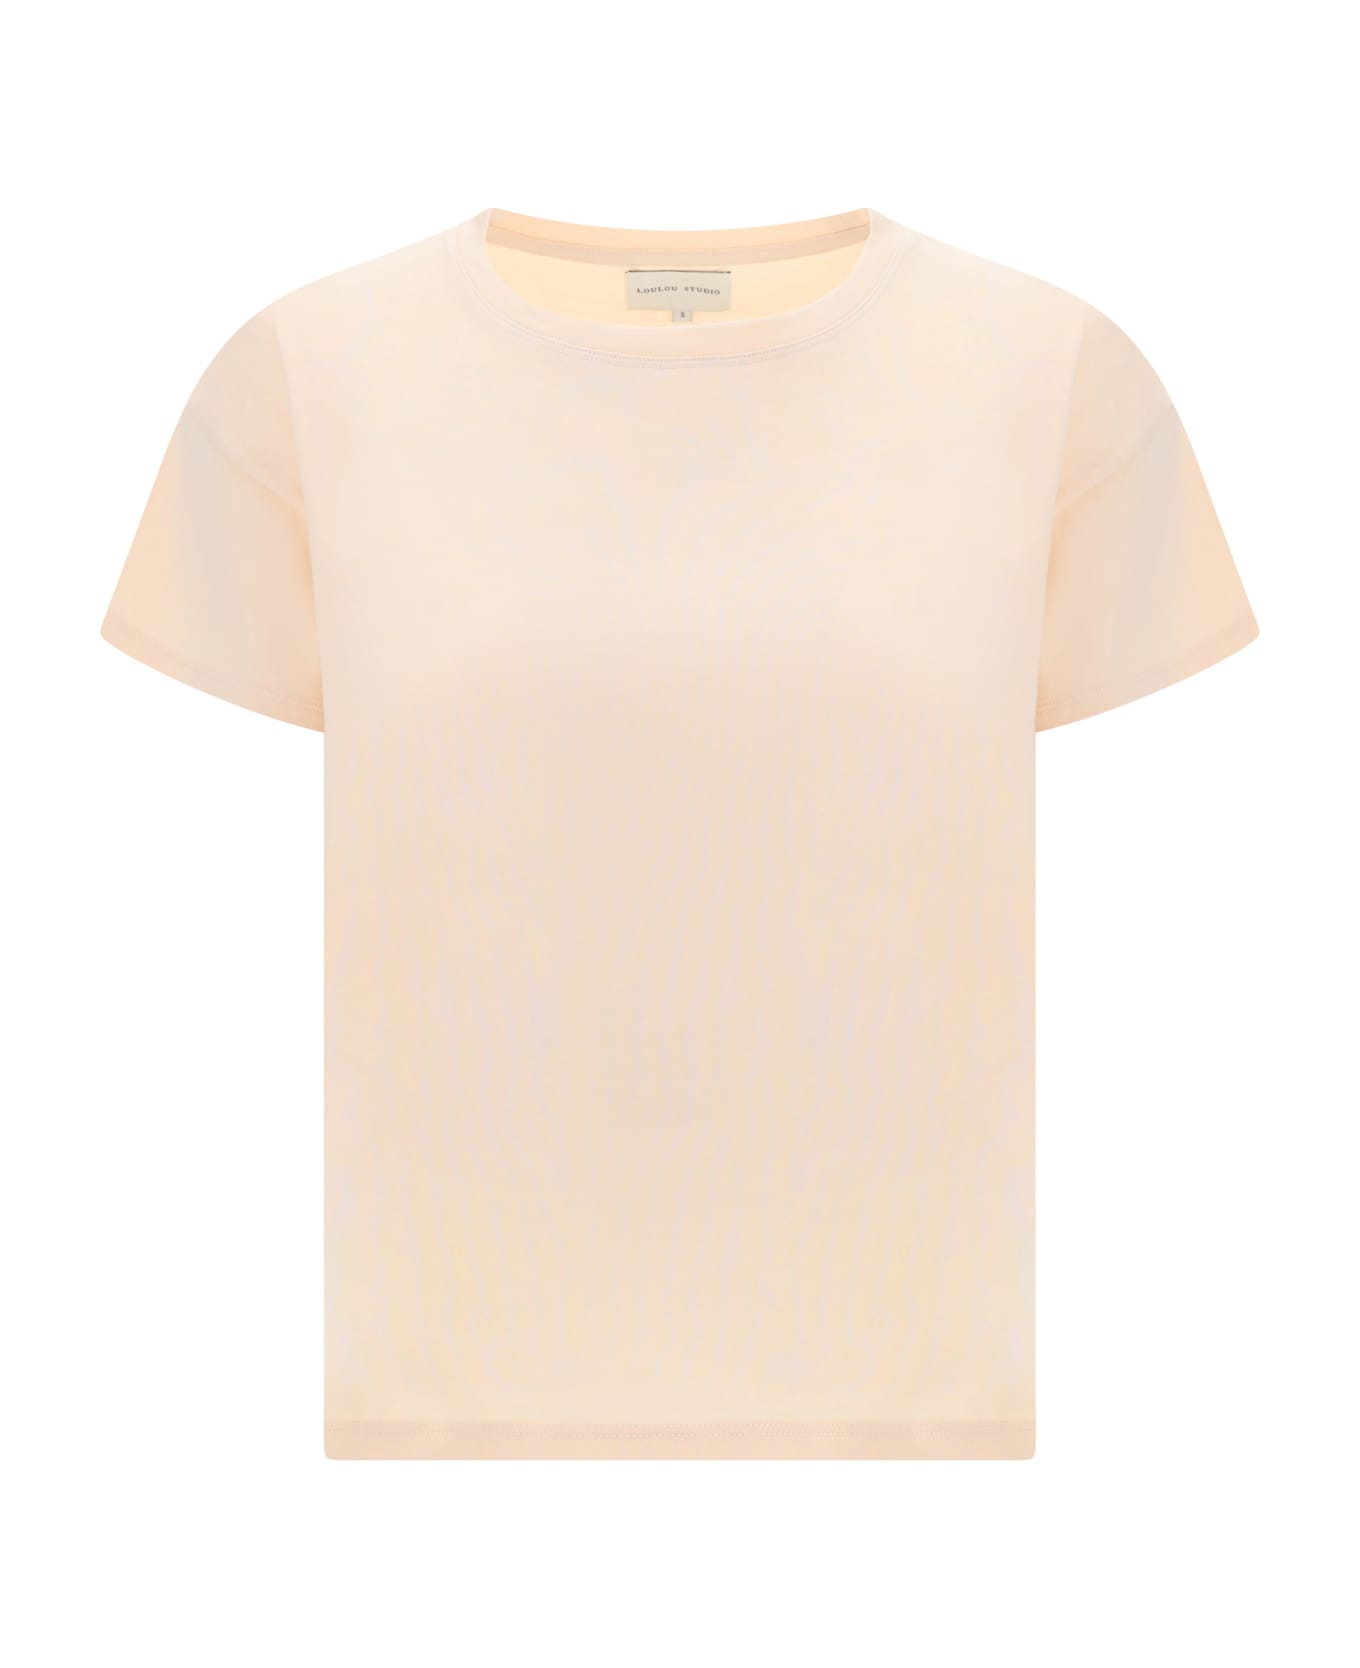 Loulou Studio T-shirt - Cream Rose